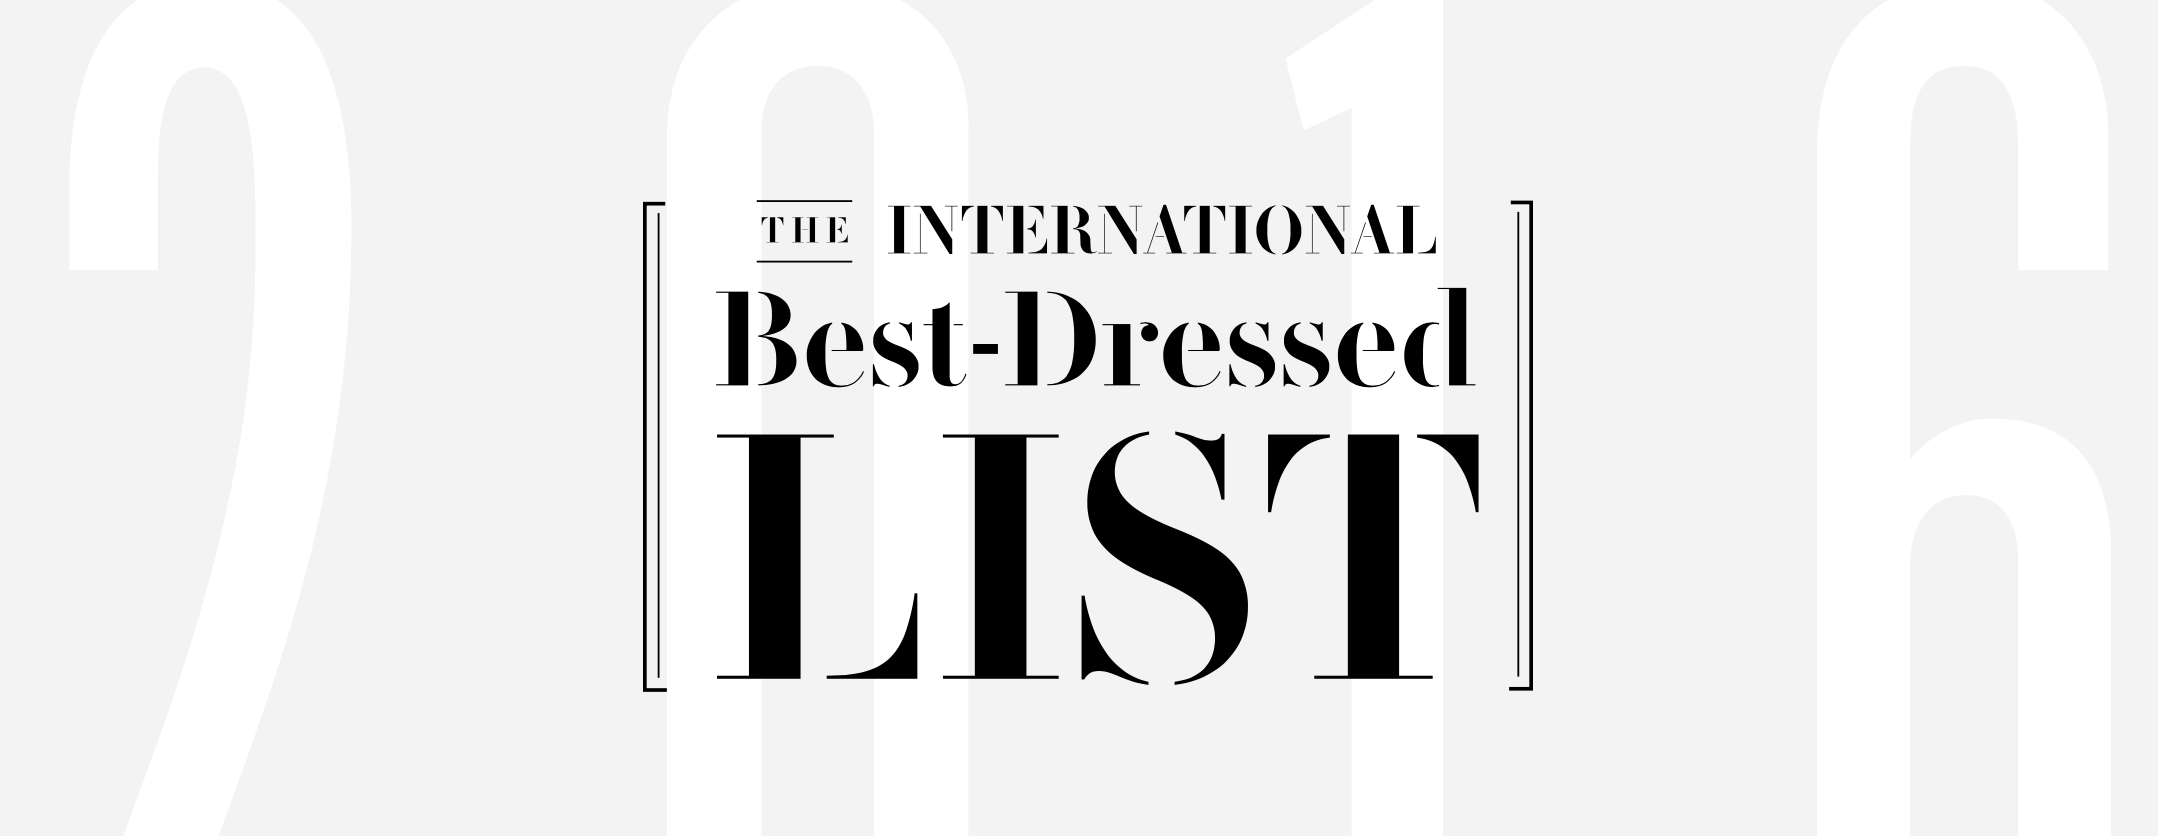 Vanity-fair-international-best-dressed-list-2016-stephenf